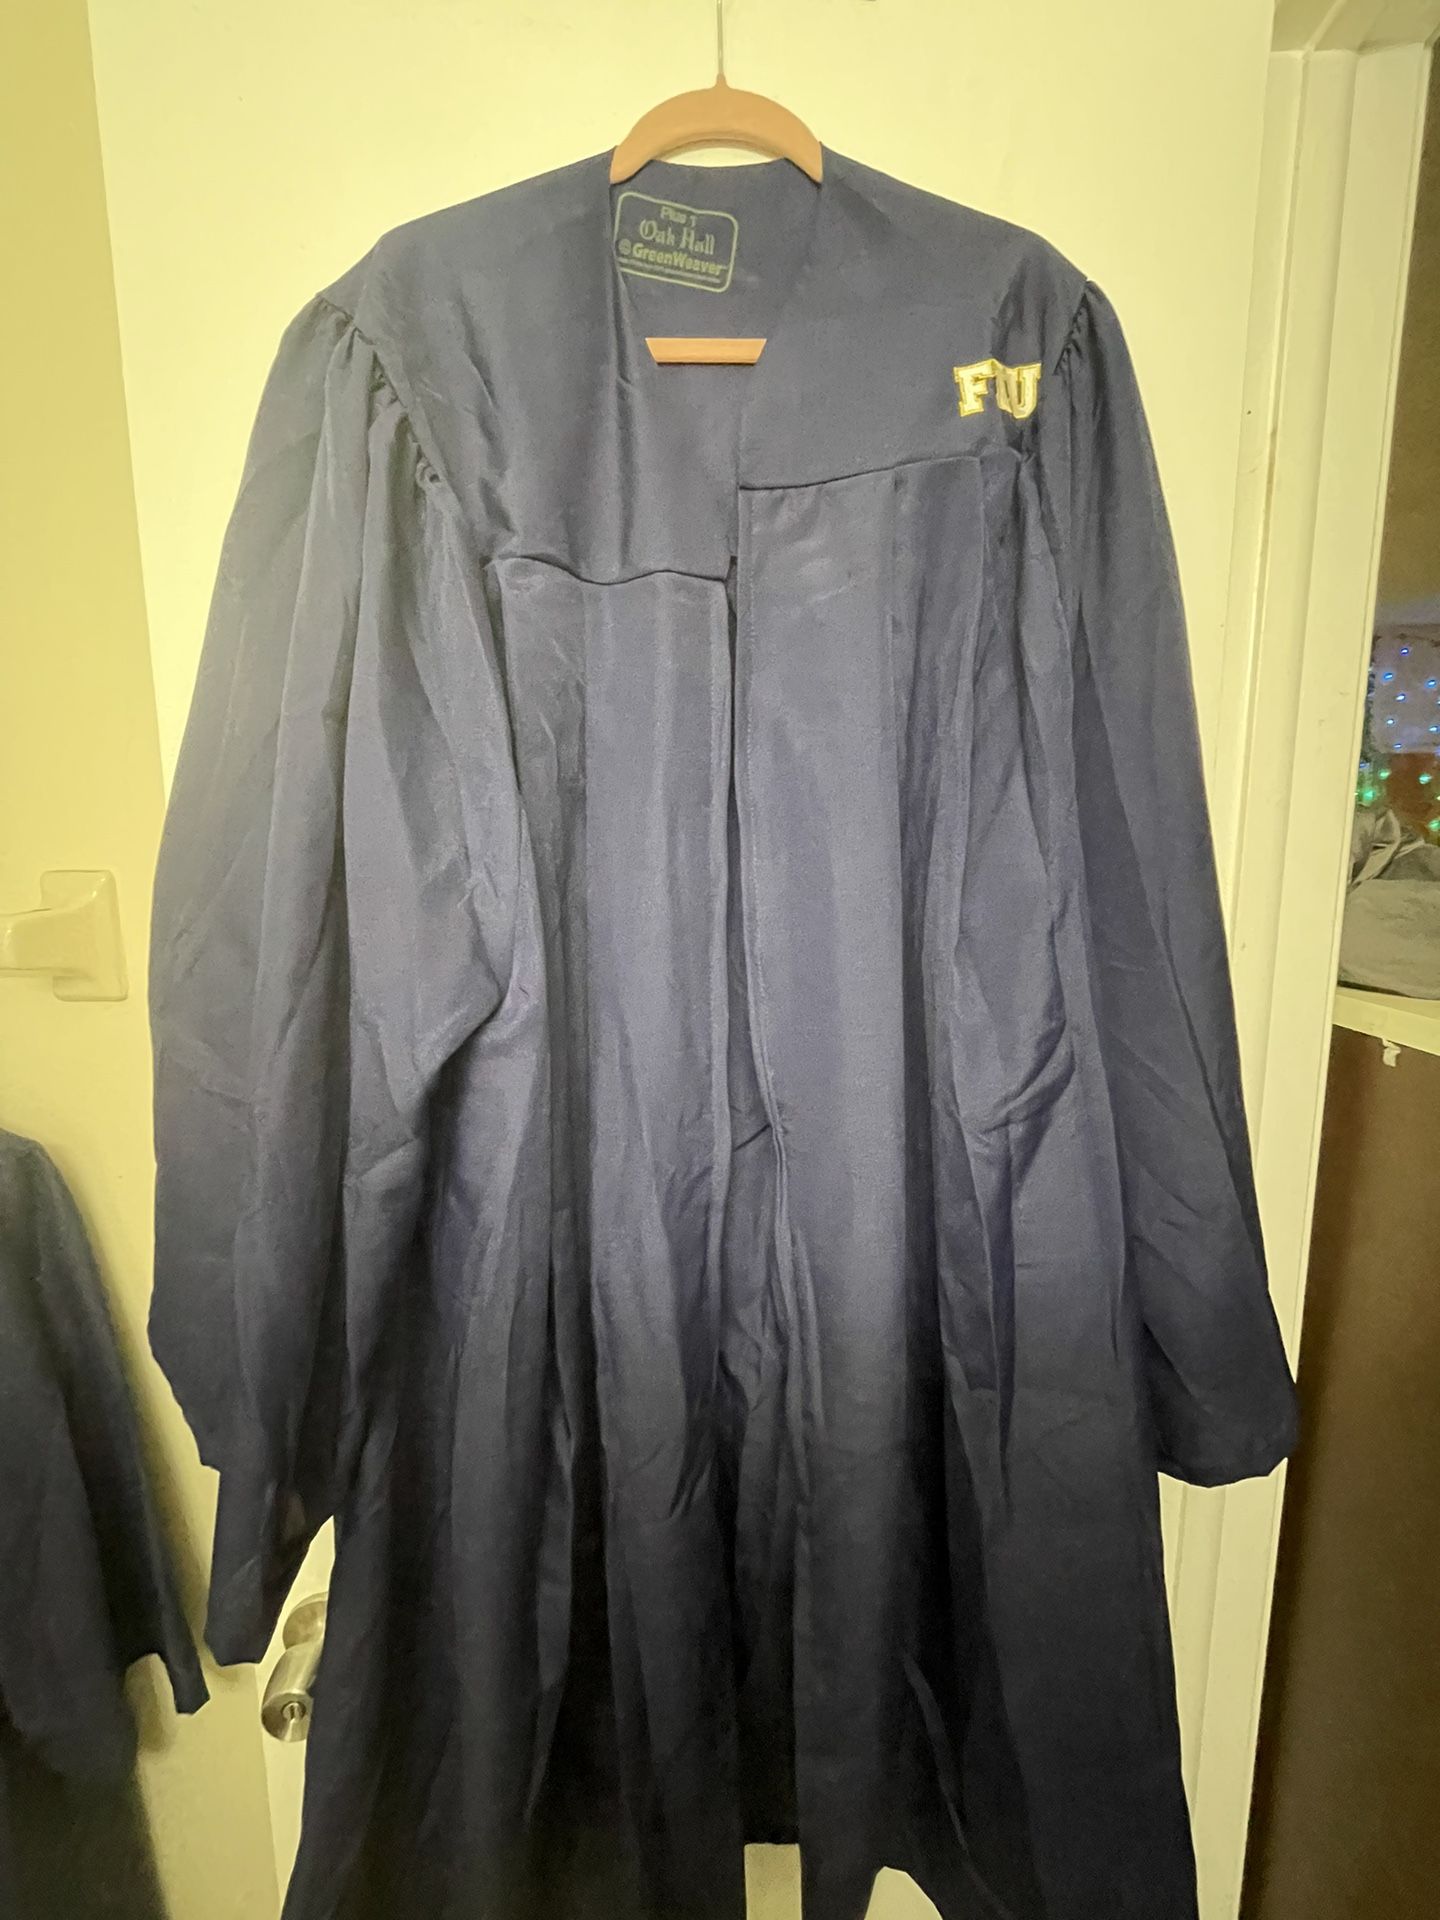 FIU graduation Gown Plus 1 